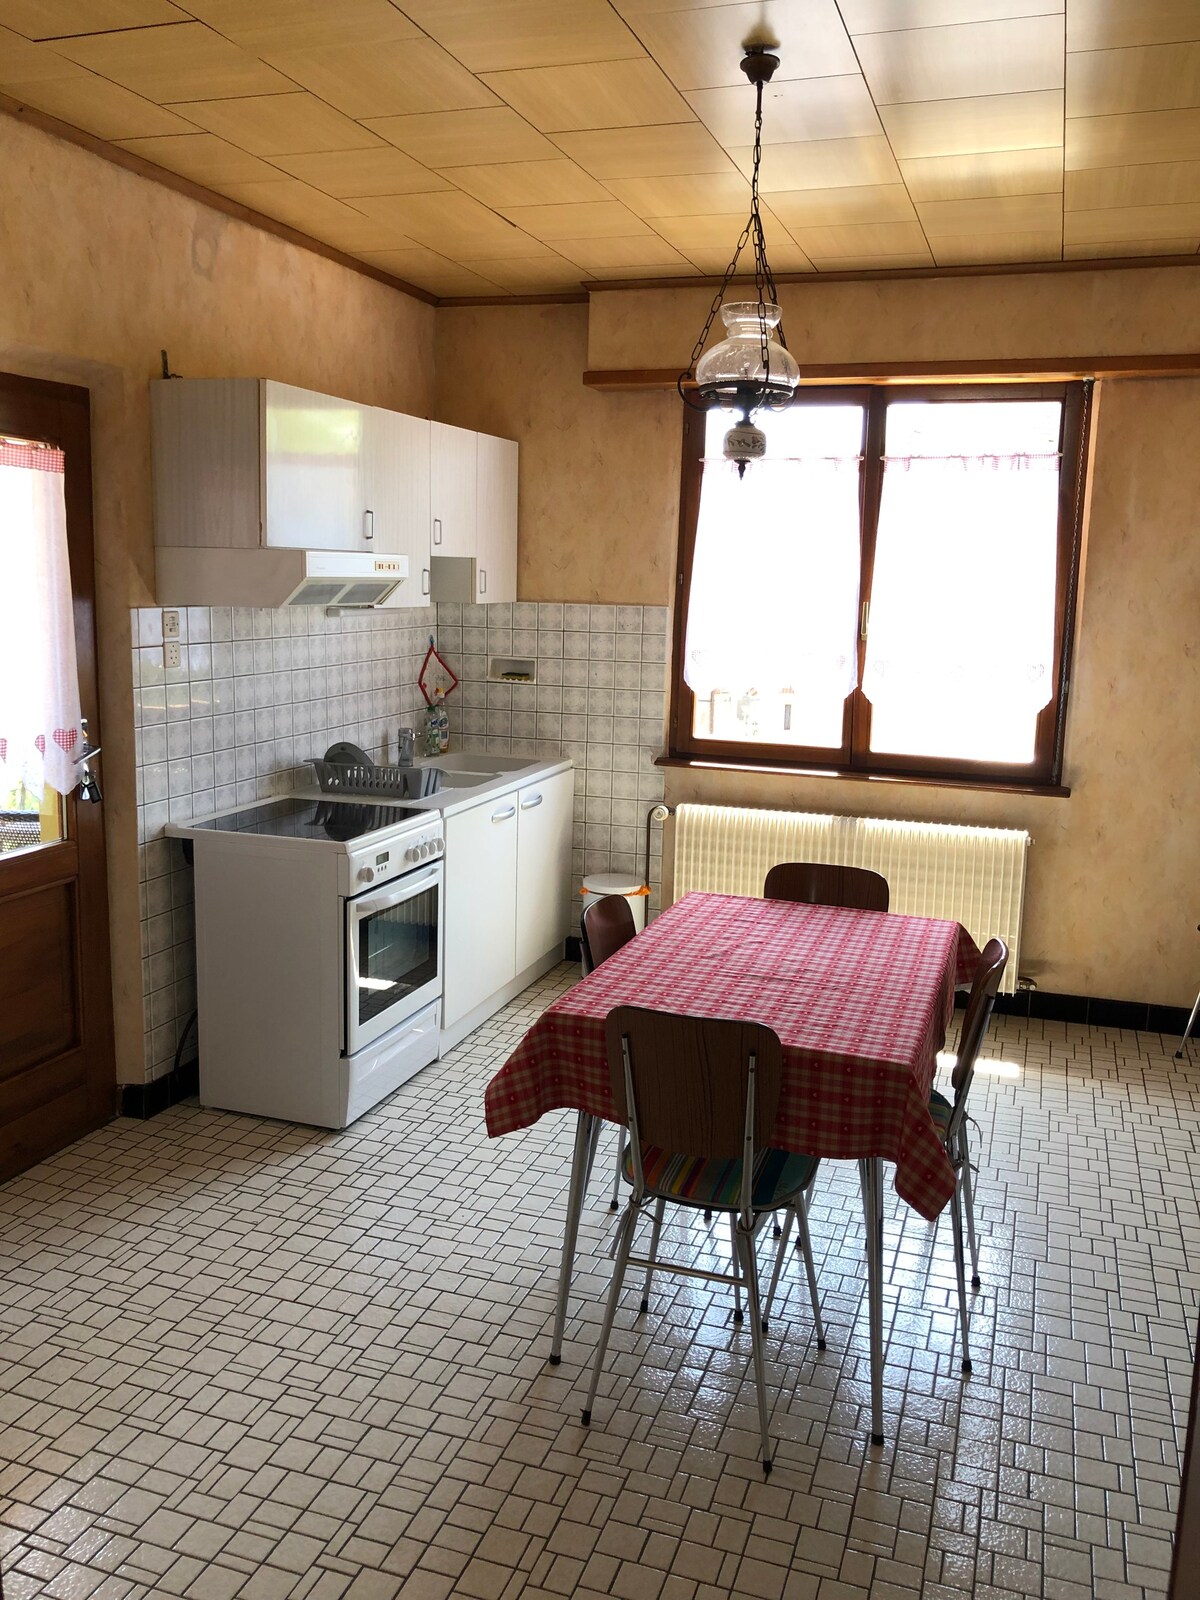 3卧室小屋+厨房+淋浴间和马桶